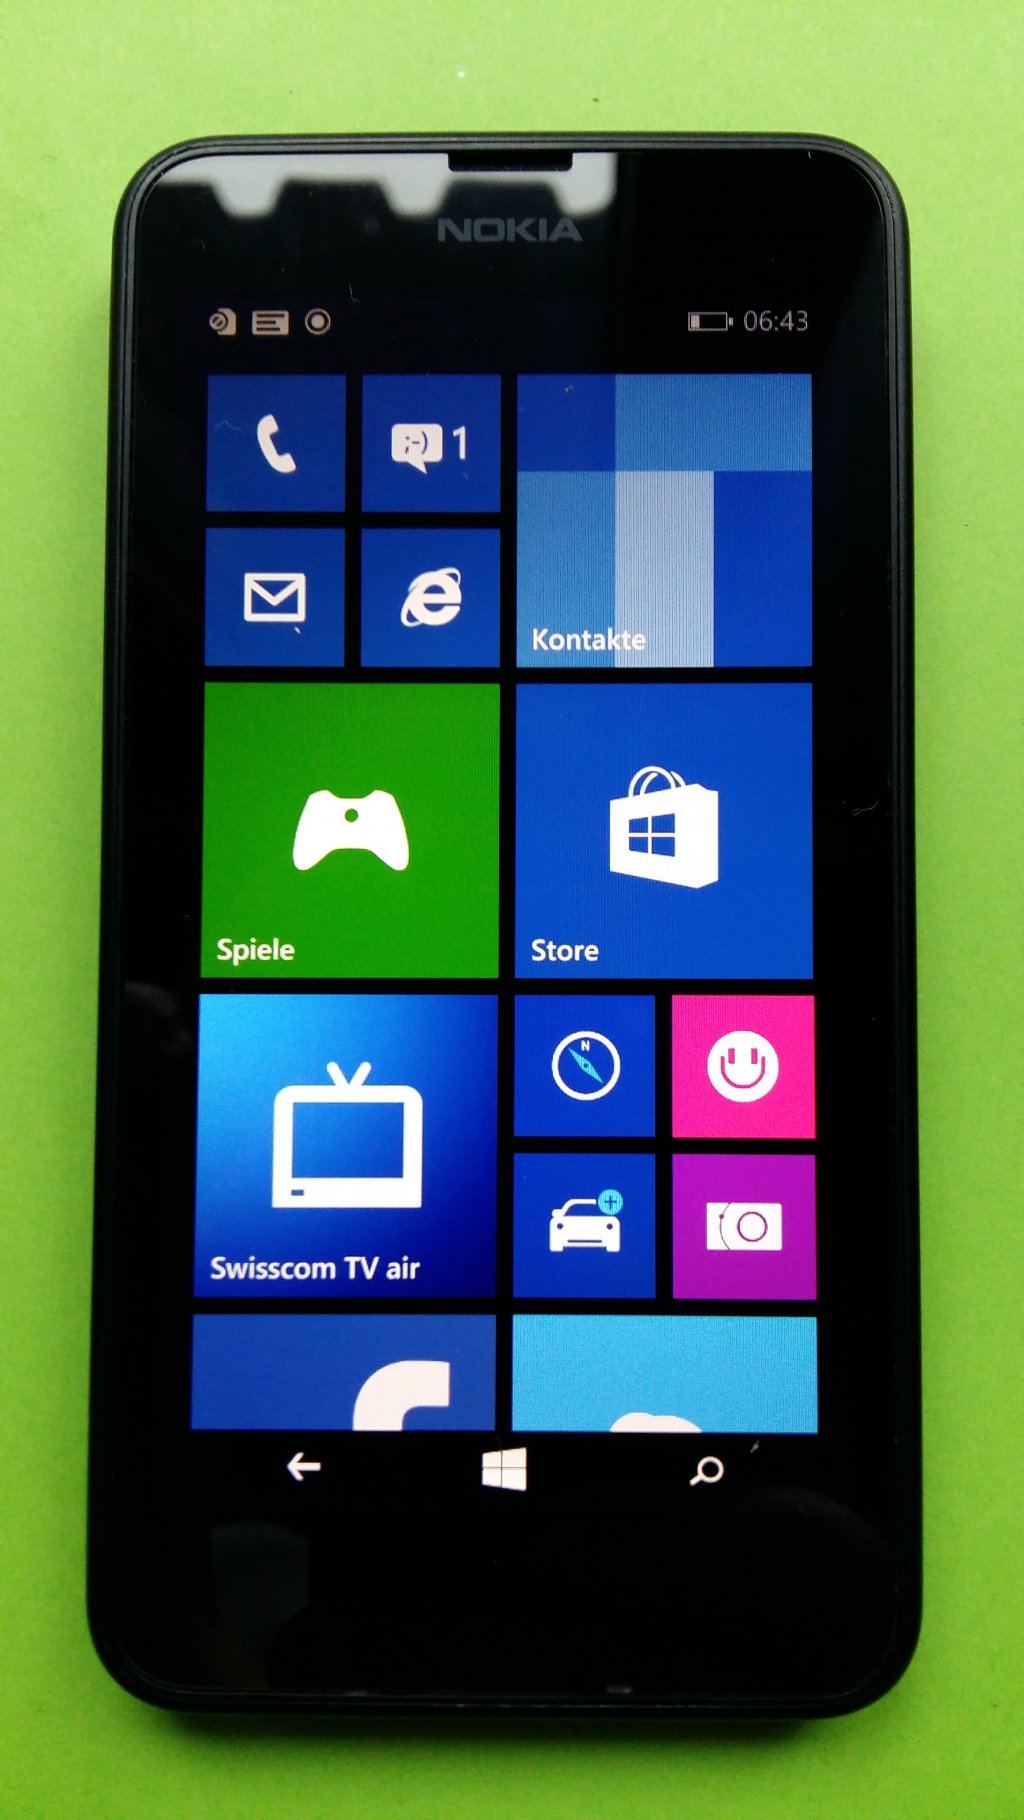 image-7926243-Nokia_635_Lumia_(1)1.w640.jpg